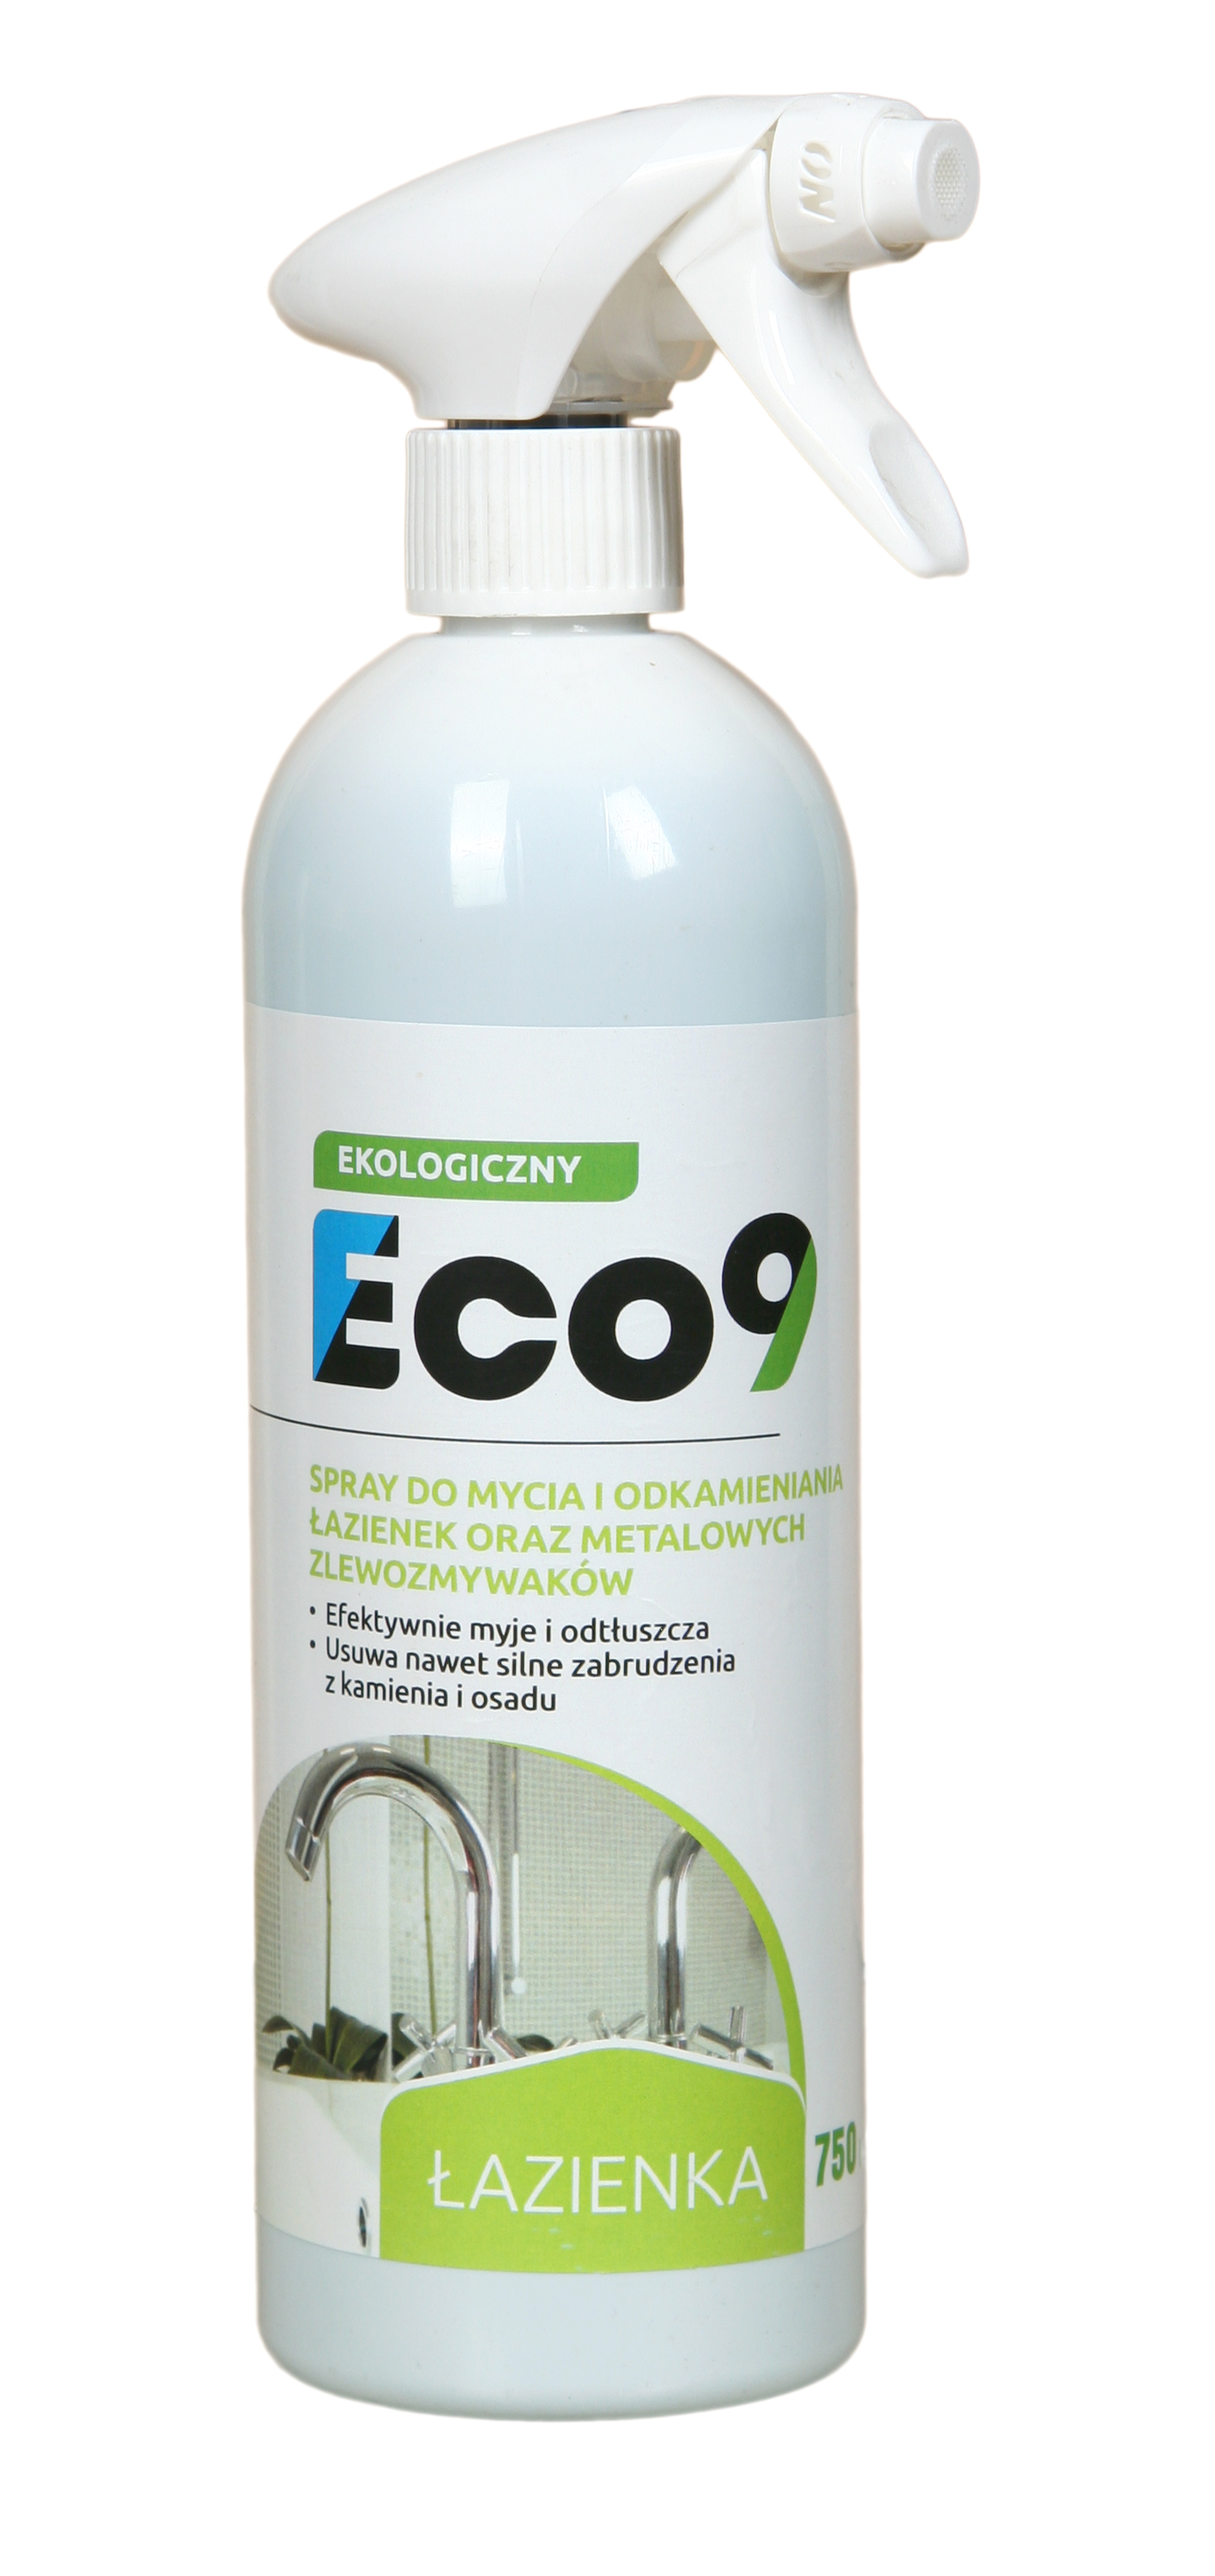 Eco9 Łazienka ekologiczny preparat do czyszczenia łazienki